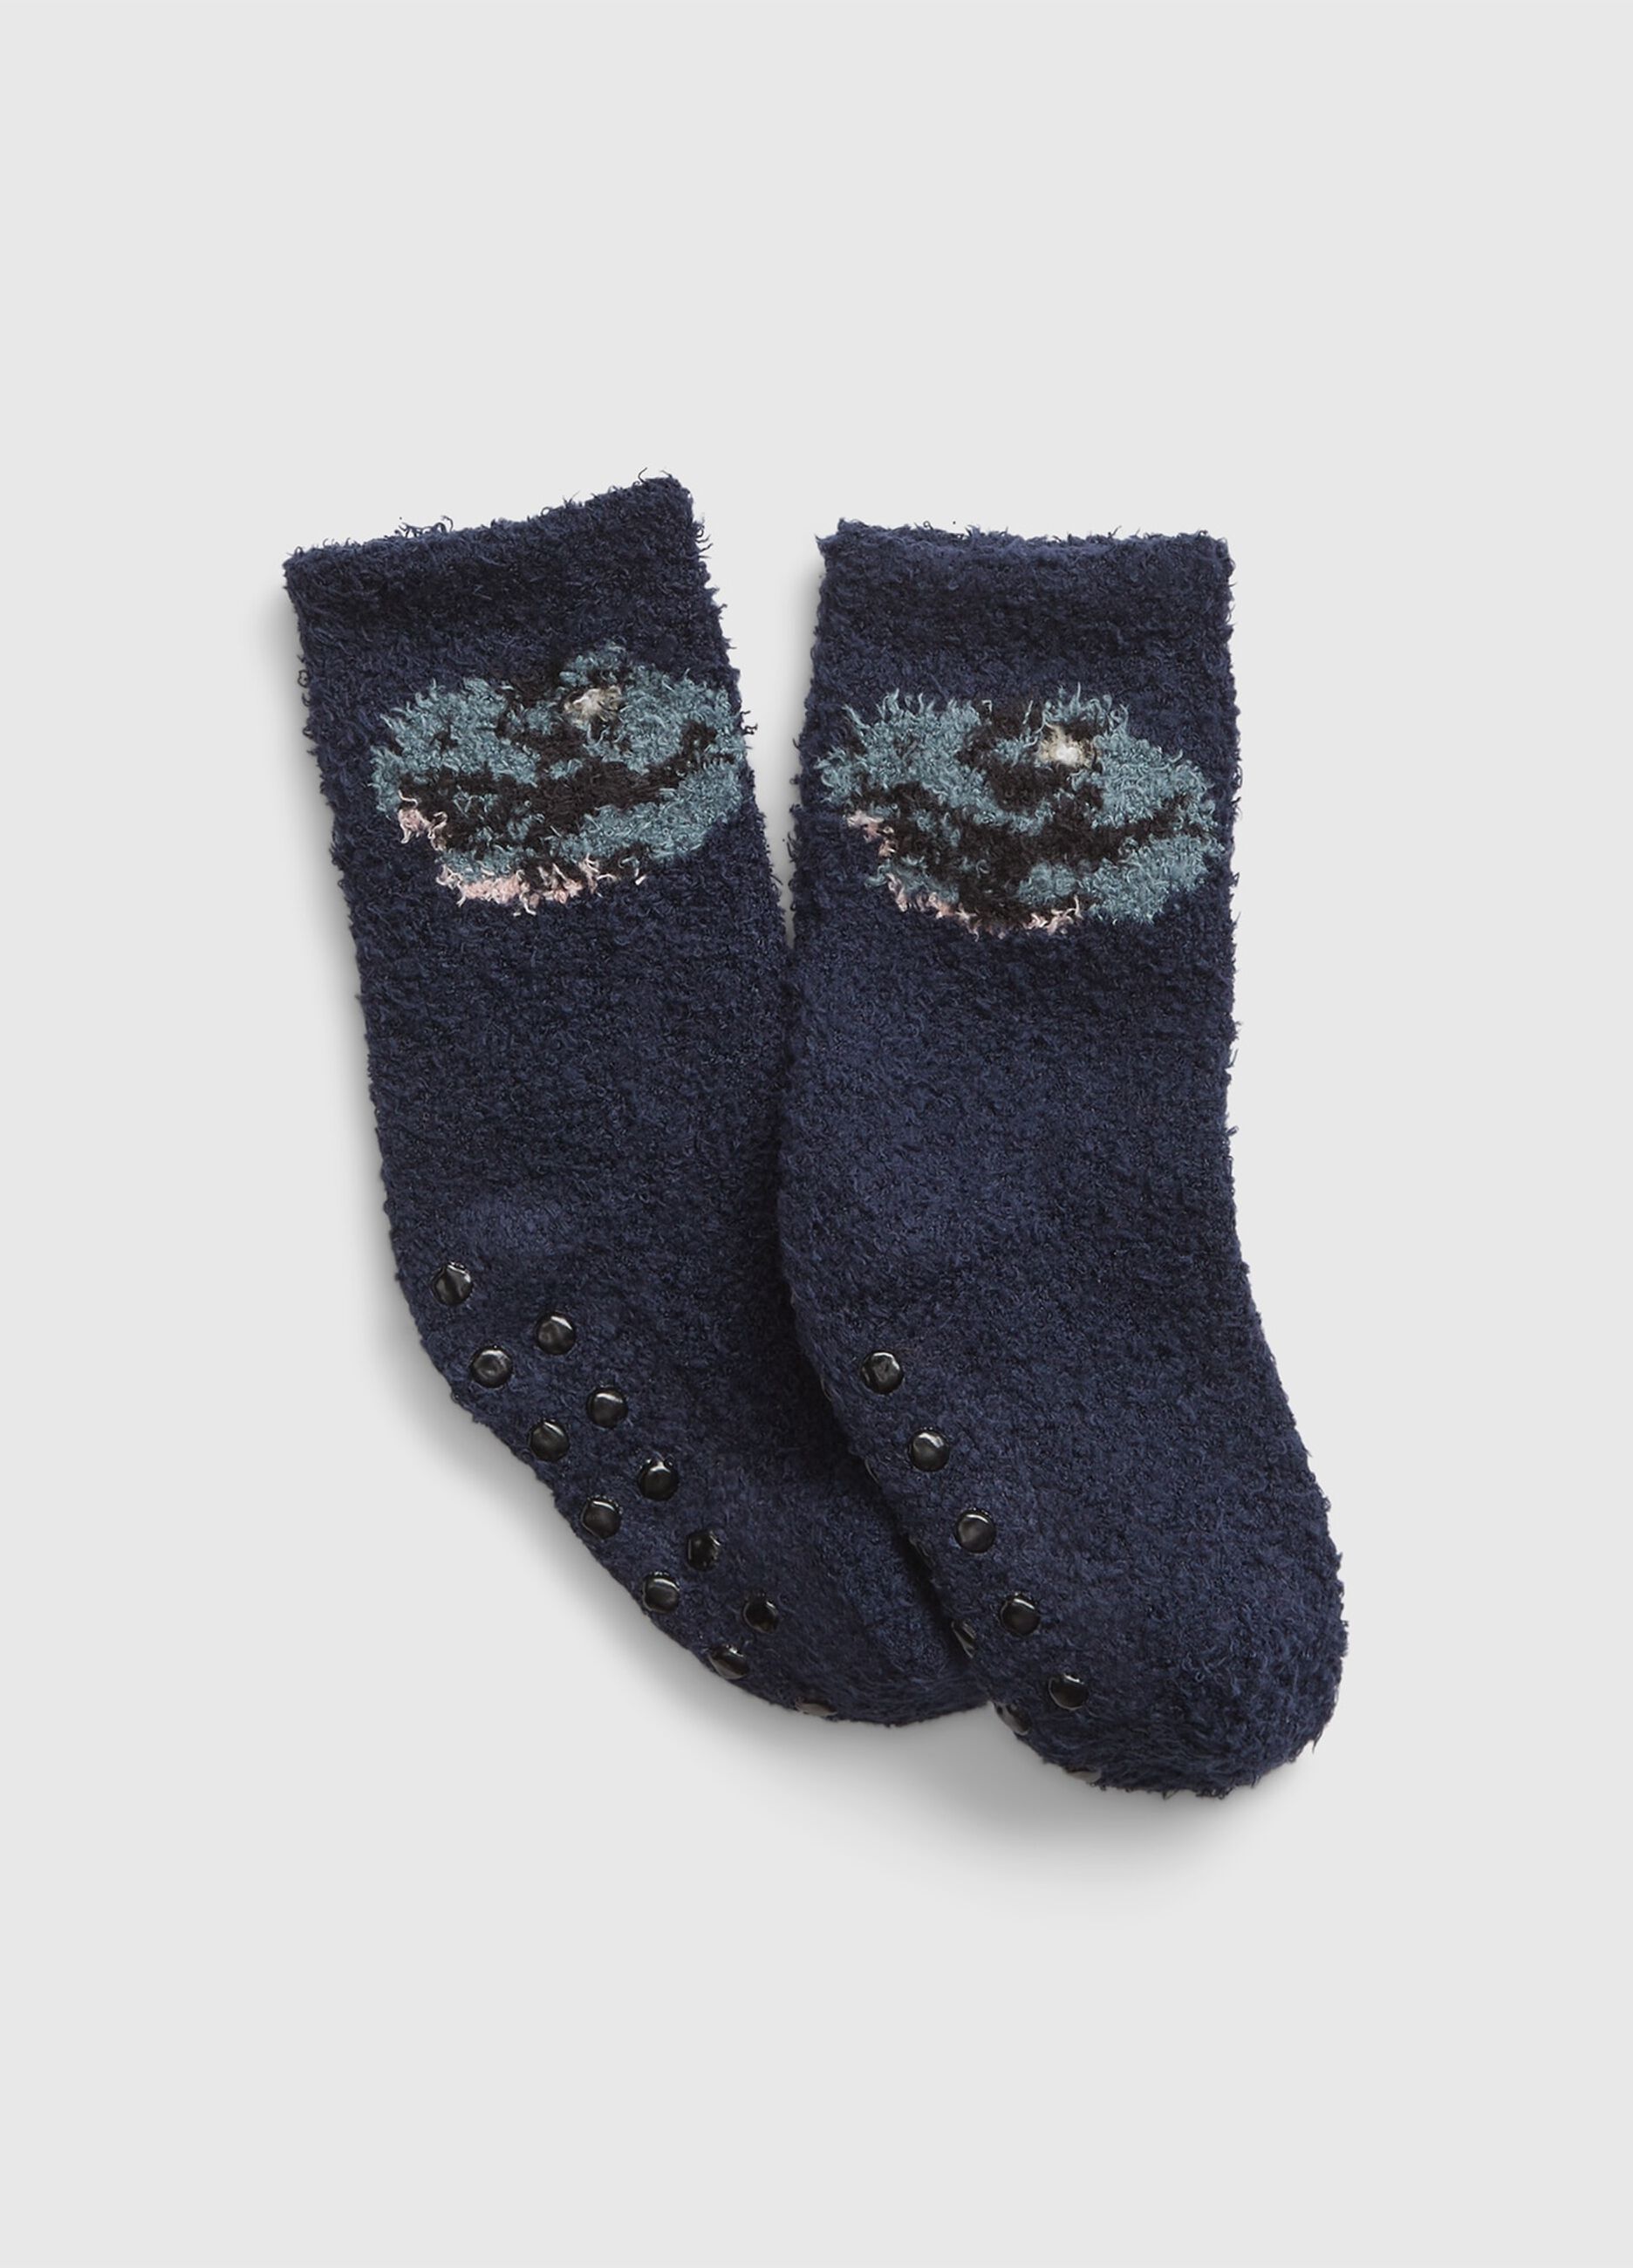 Slipper socks with dinosaur design